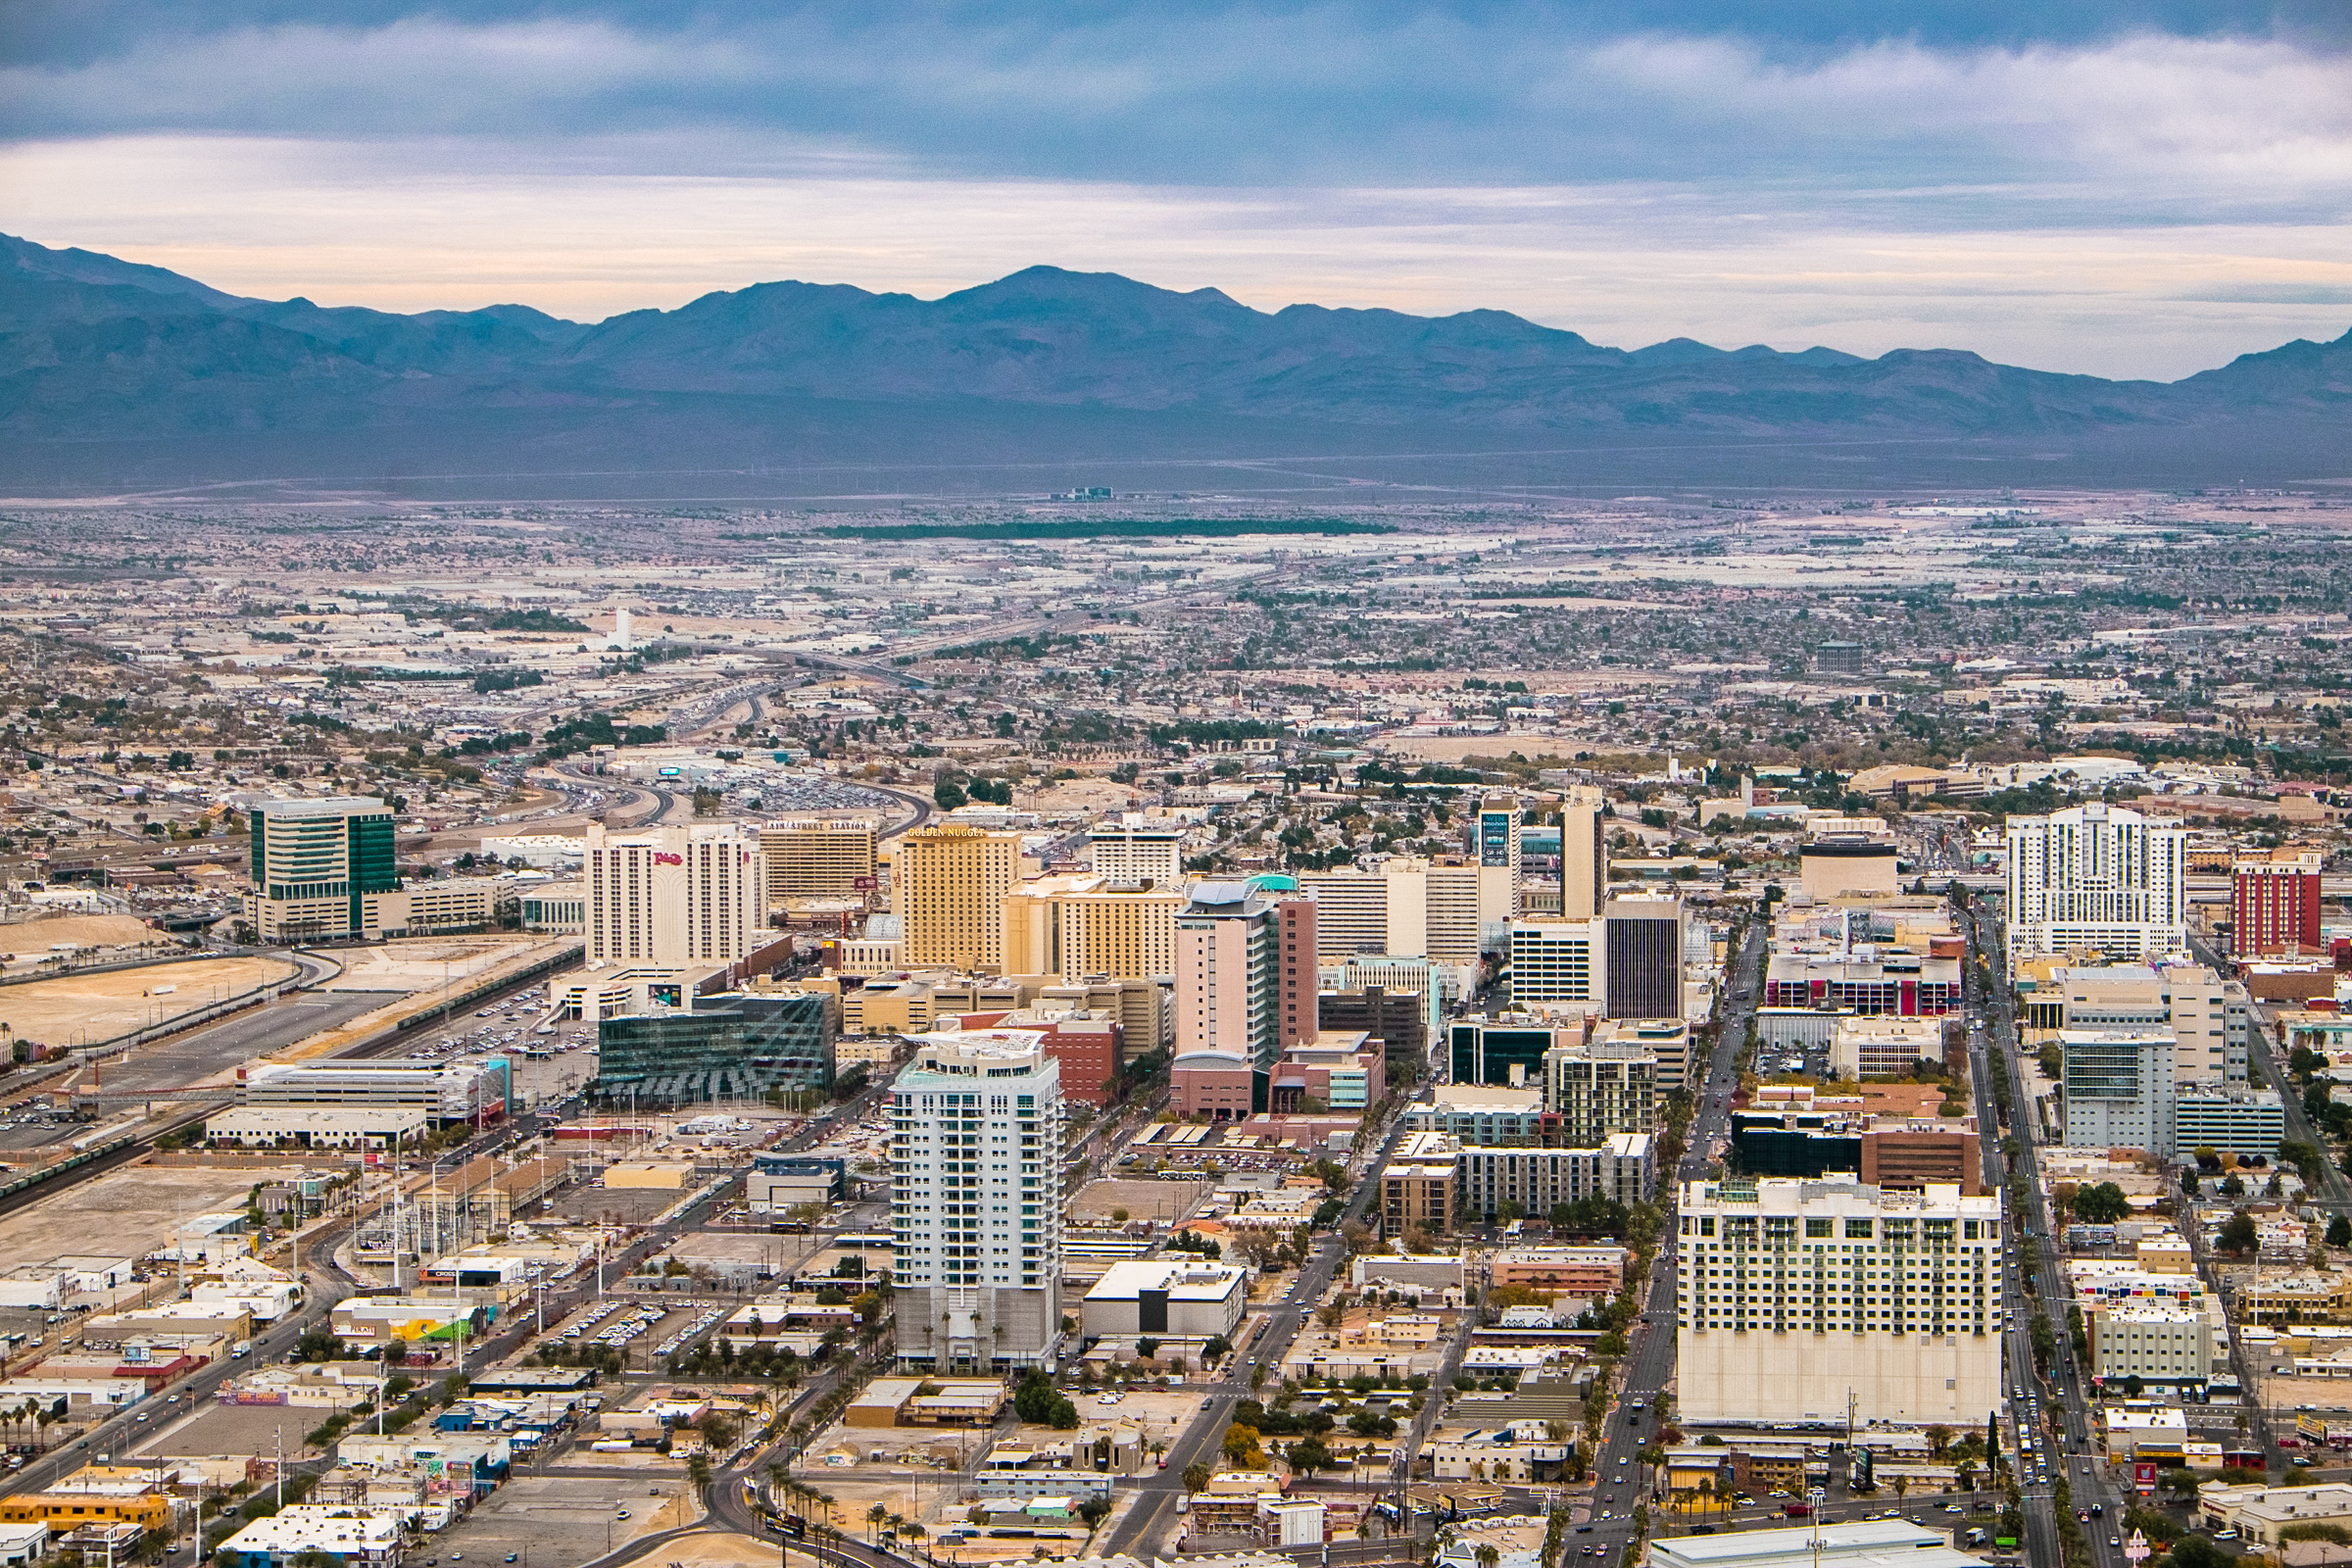 The solution for homelessness in Las Vegas - Vegas Stronger